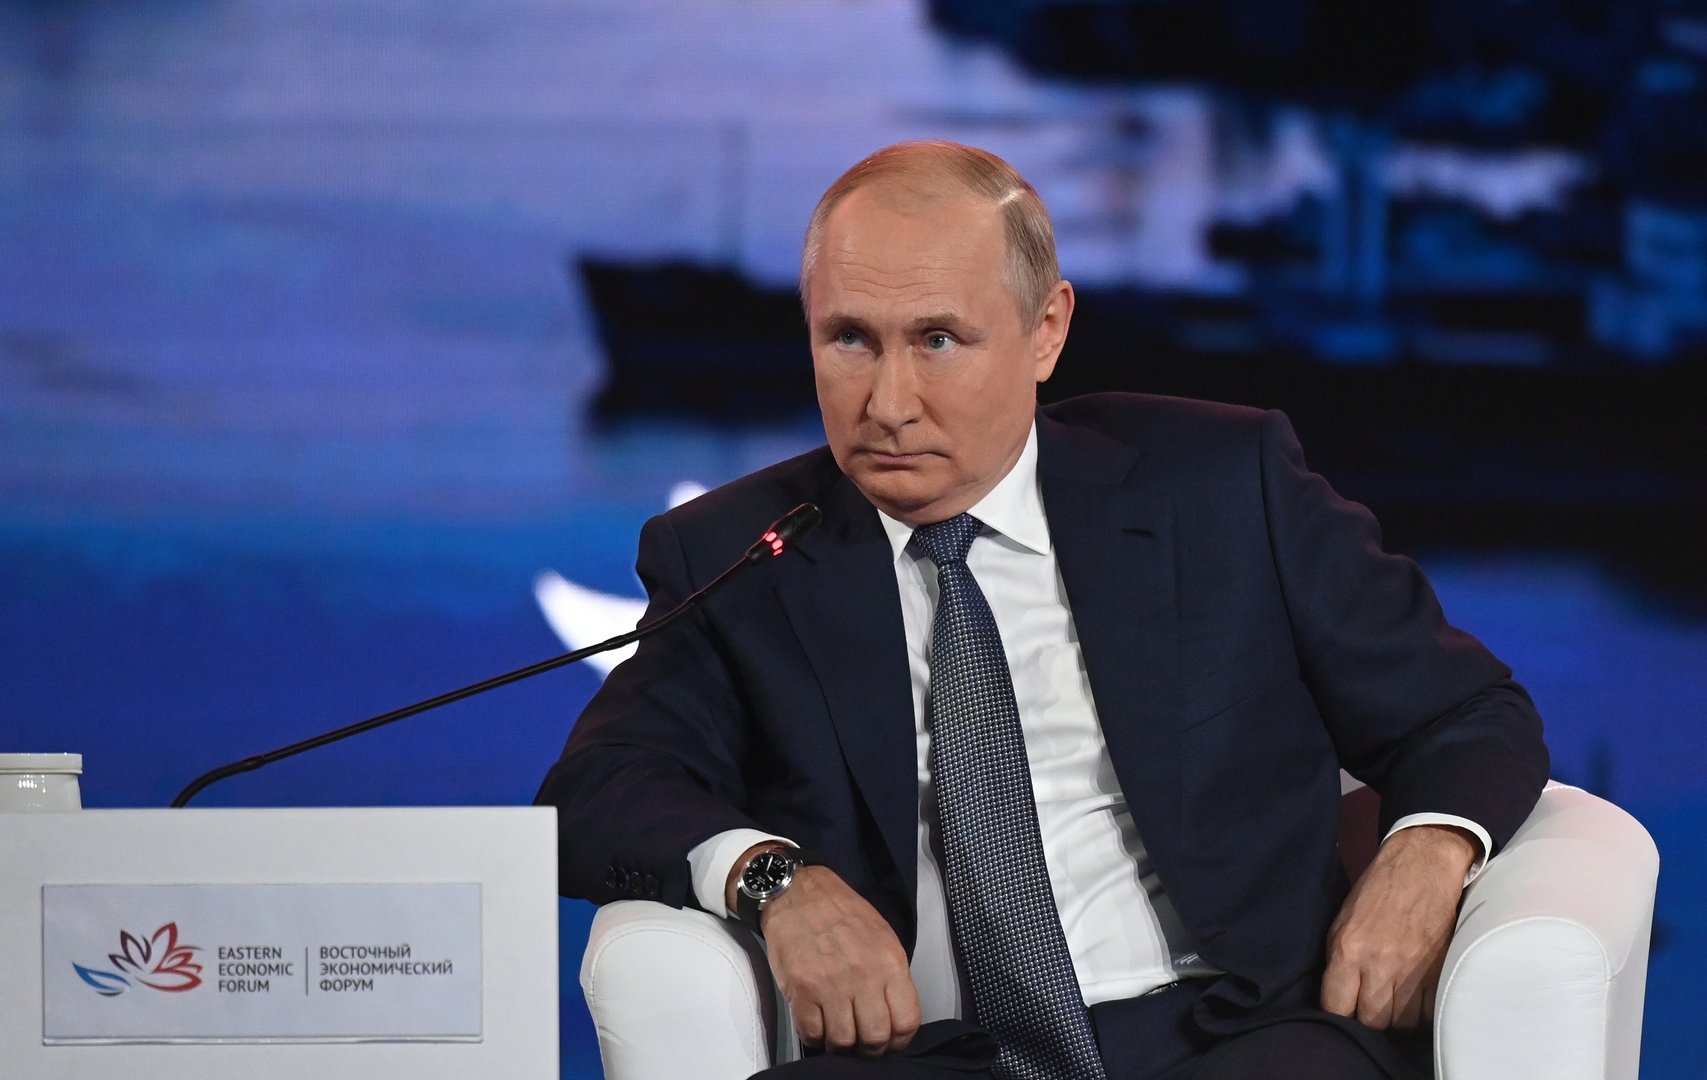 بوتين عن دوافع قلق روسيا إزاء تحركات الناتو: دفعونا إلى خط لم يعد فيه أمامنا مجال للتراجع